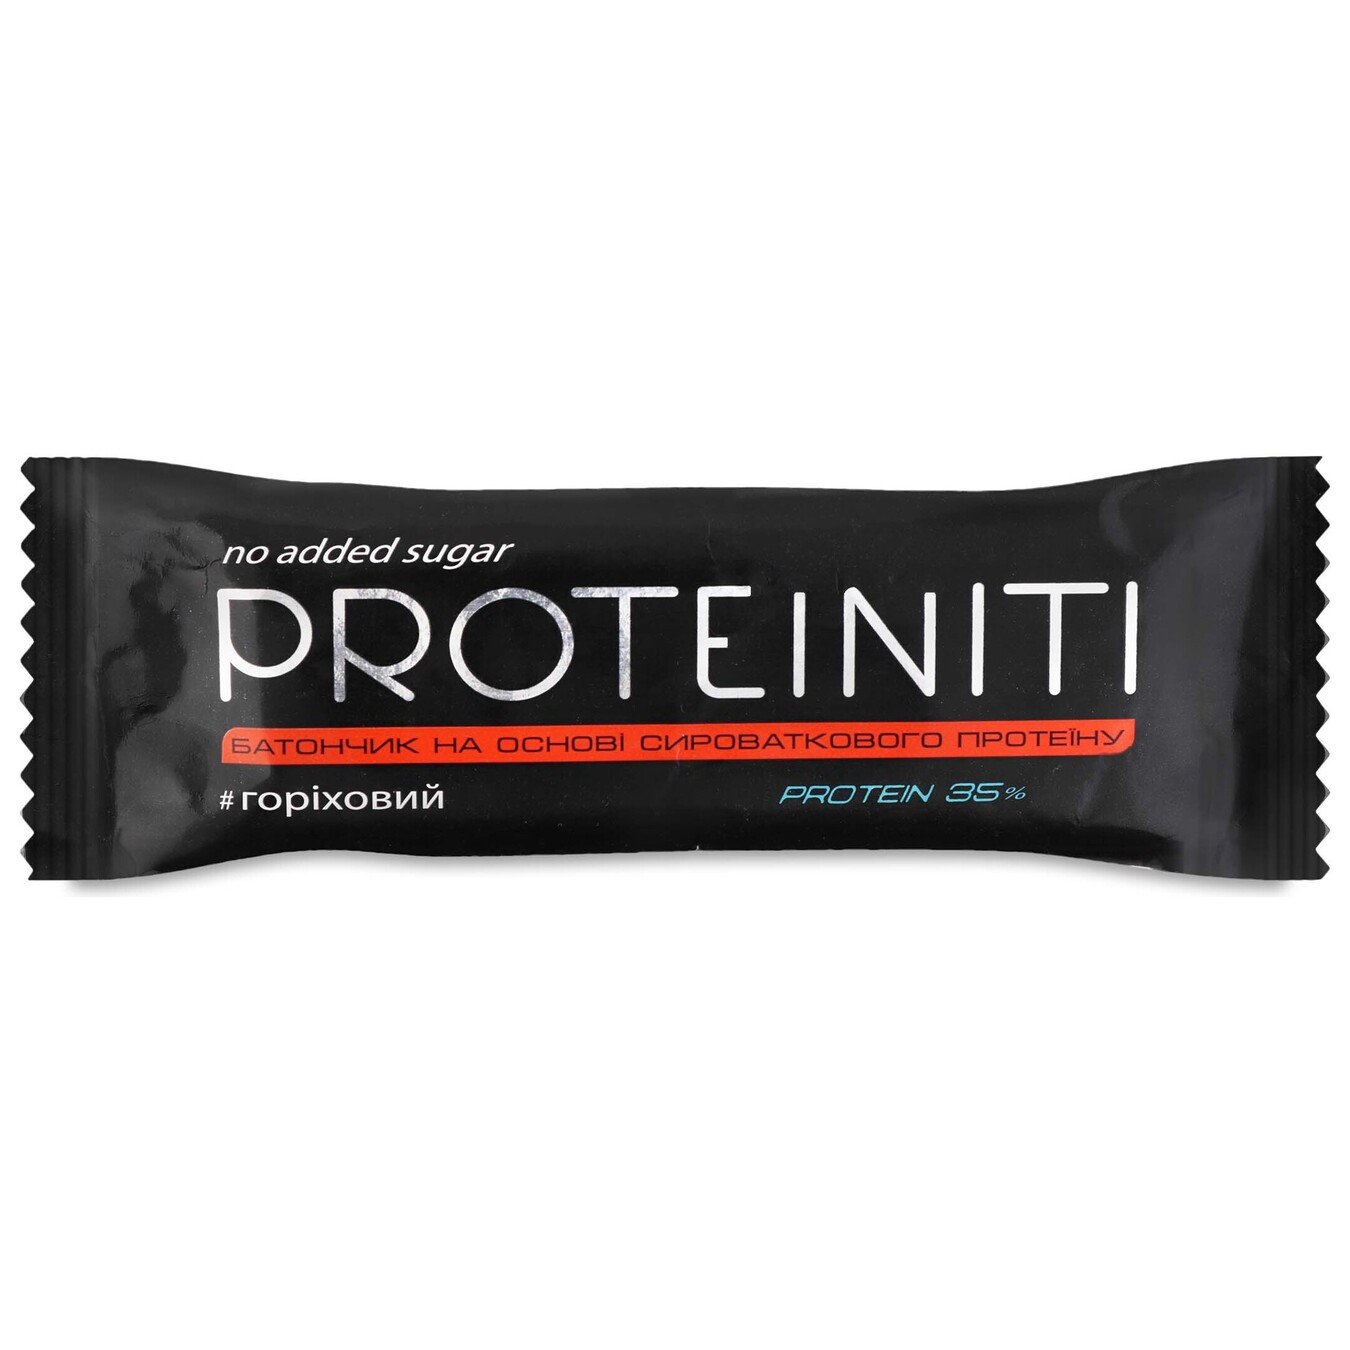 Батончик Proteiniti протеїновий горіховий 40г